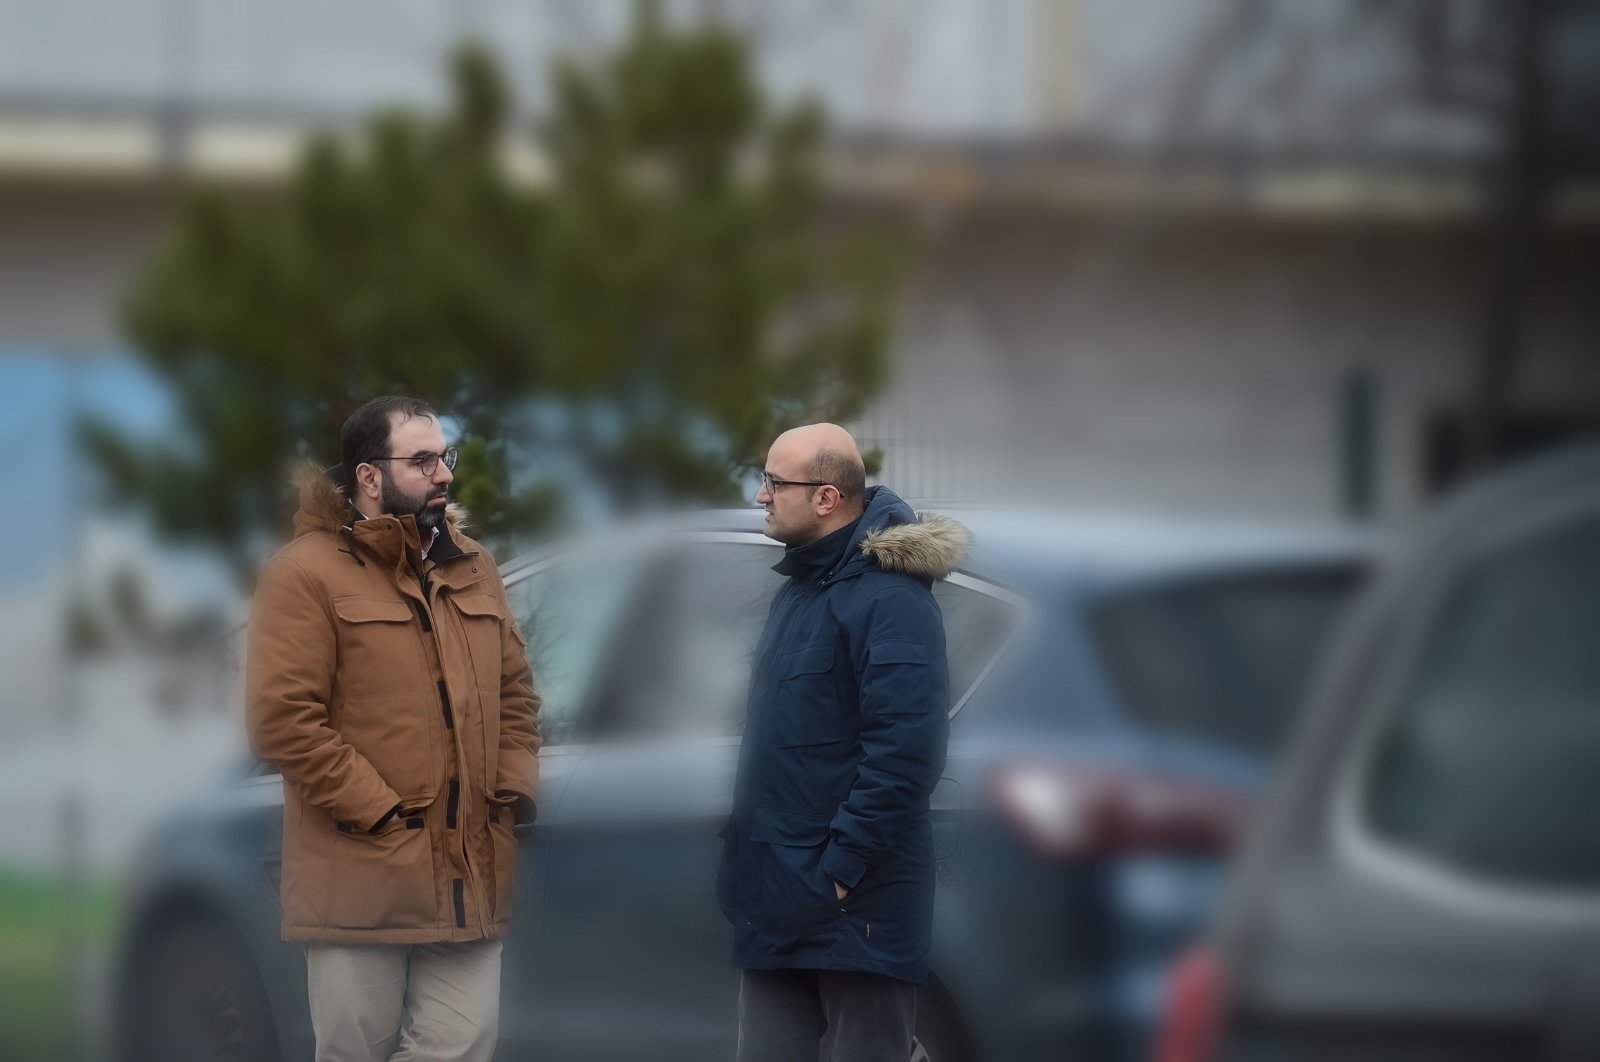 Two members of the Gülenist Terror Group’s (FETÖ) wanted by Türkiye, Celal Fındık (L) and Ercan Karakoyun (R), are seen chatting on a street in Berlin, Germany, Jan. 26, 2023. (Photo by Abdurrahman Şimşek)